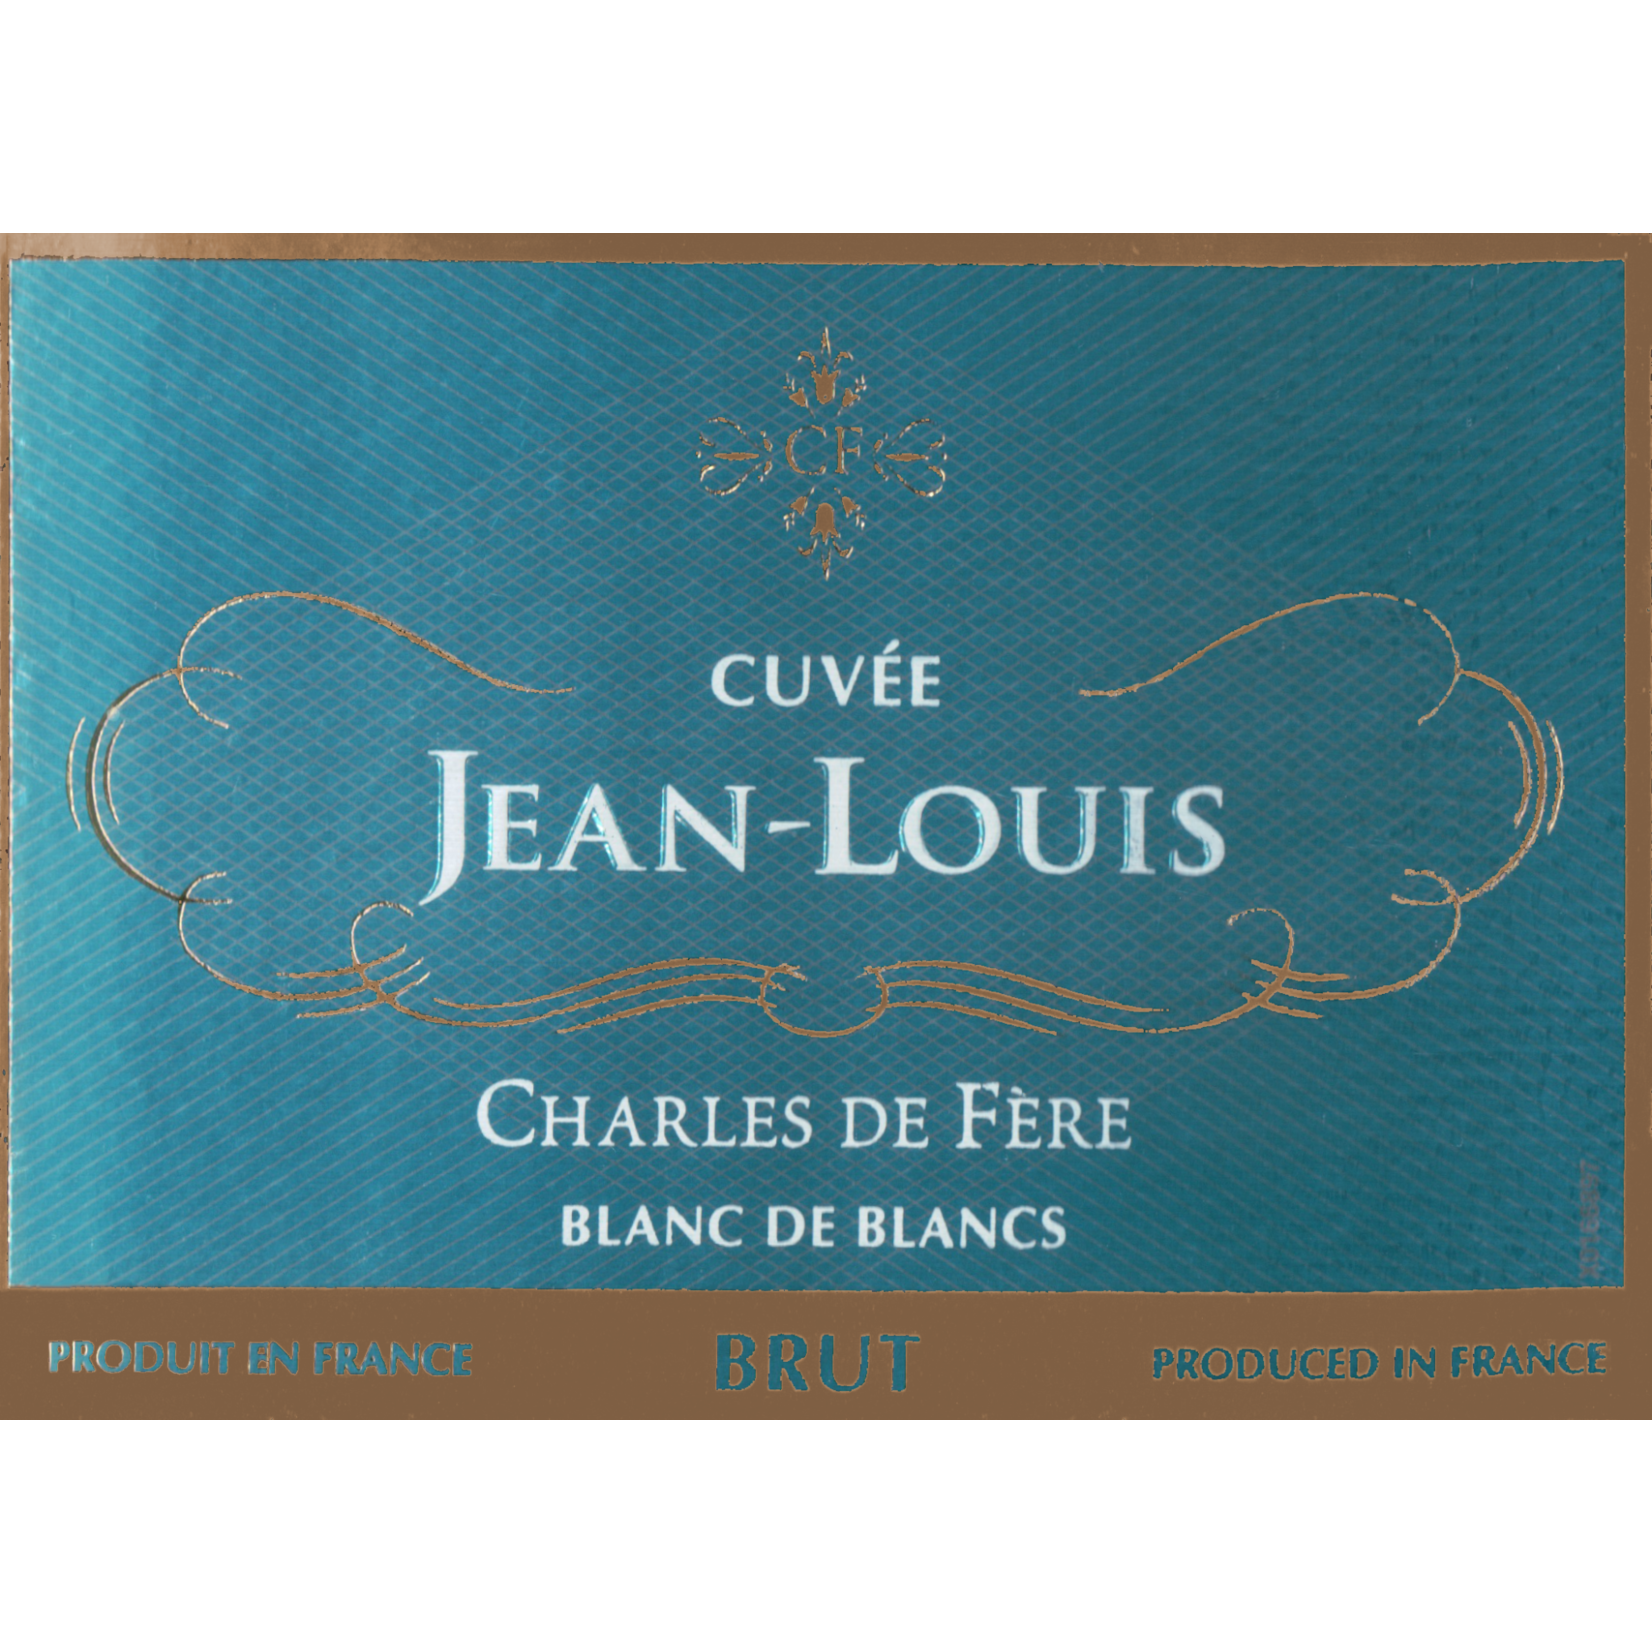 Charles de Fere Cuvee Jean-Louis Blanc de Blancs Brut 200ml